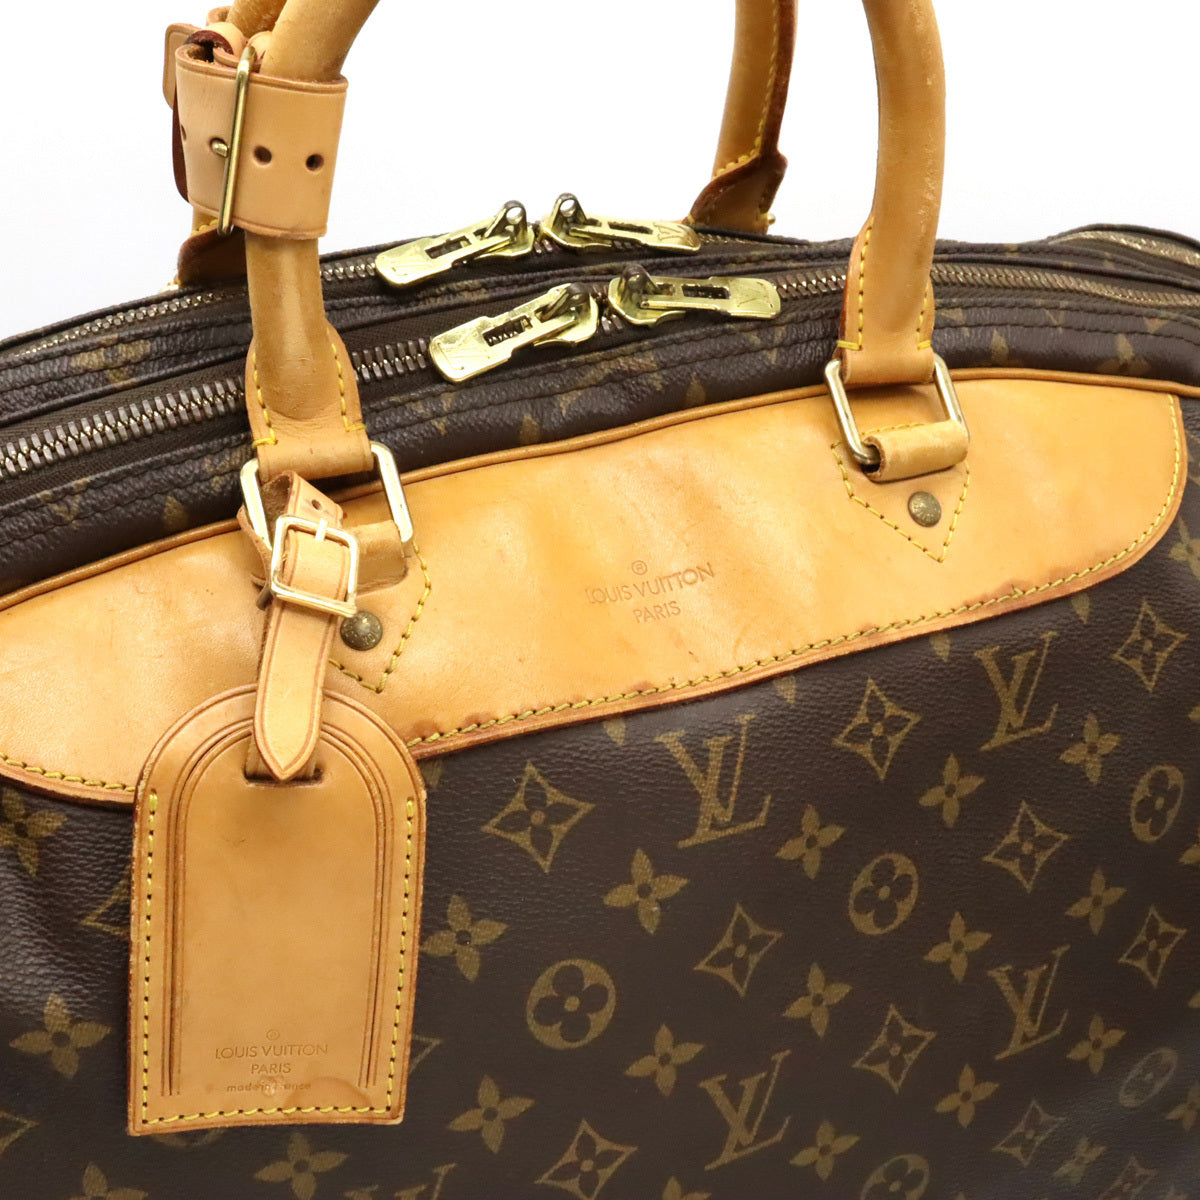 Louis Vuitton Alize Travel Bag